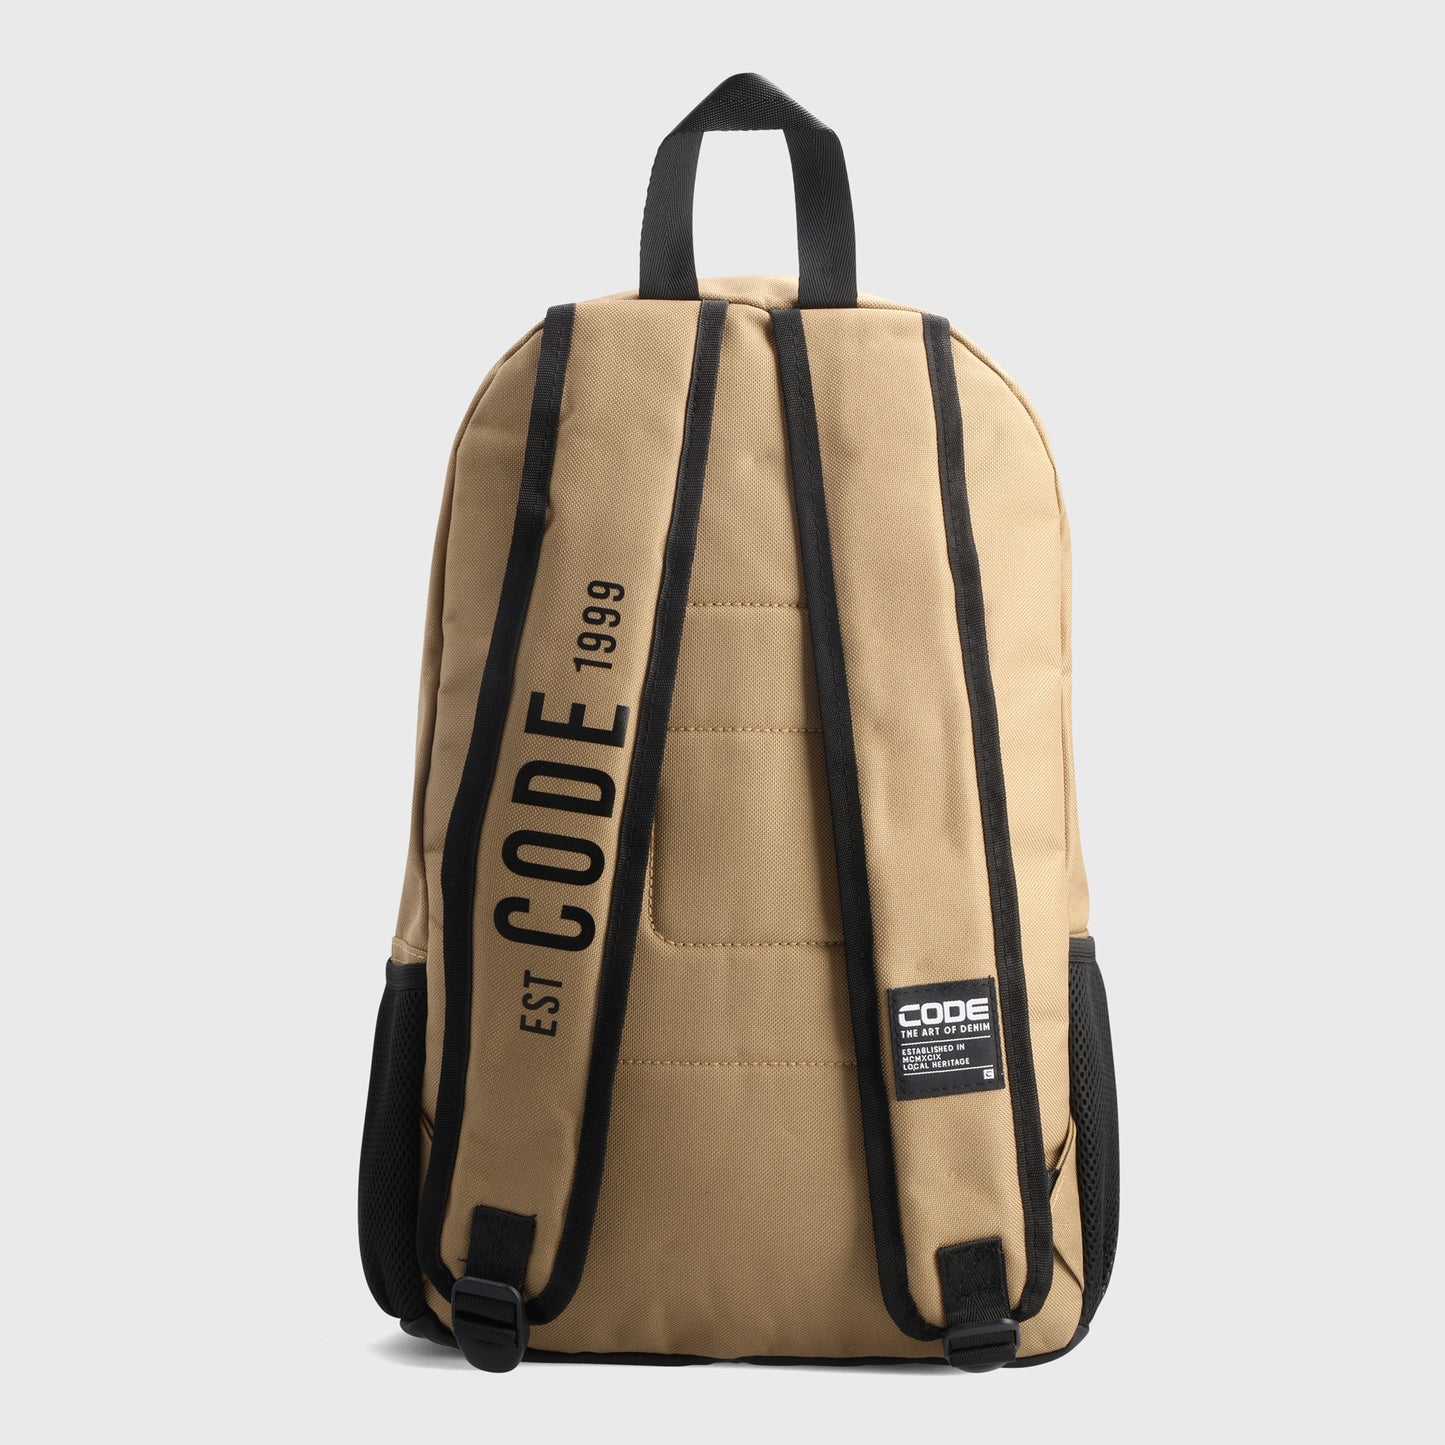 Code Unisex Branded Backpack Beige/Black _ 181663 _ Beige